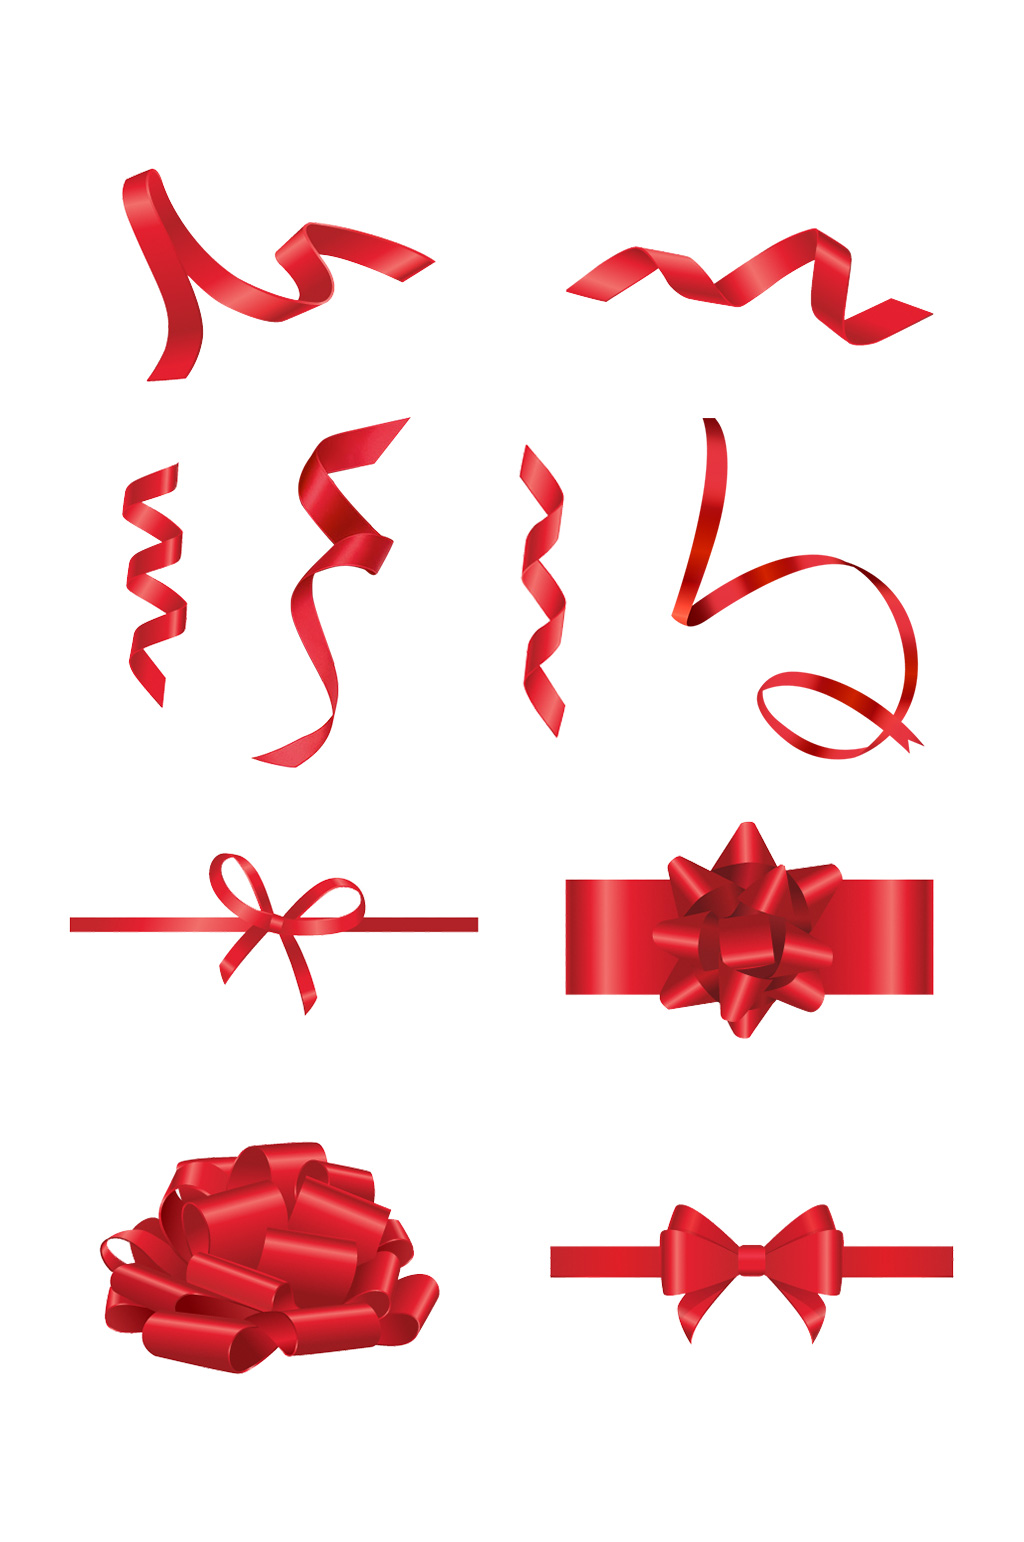 众图网独家提供红色飘带png彩带礼盒包装丝带装饰素材素材免费下载,本